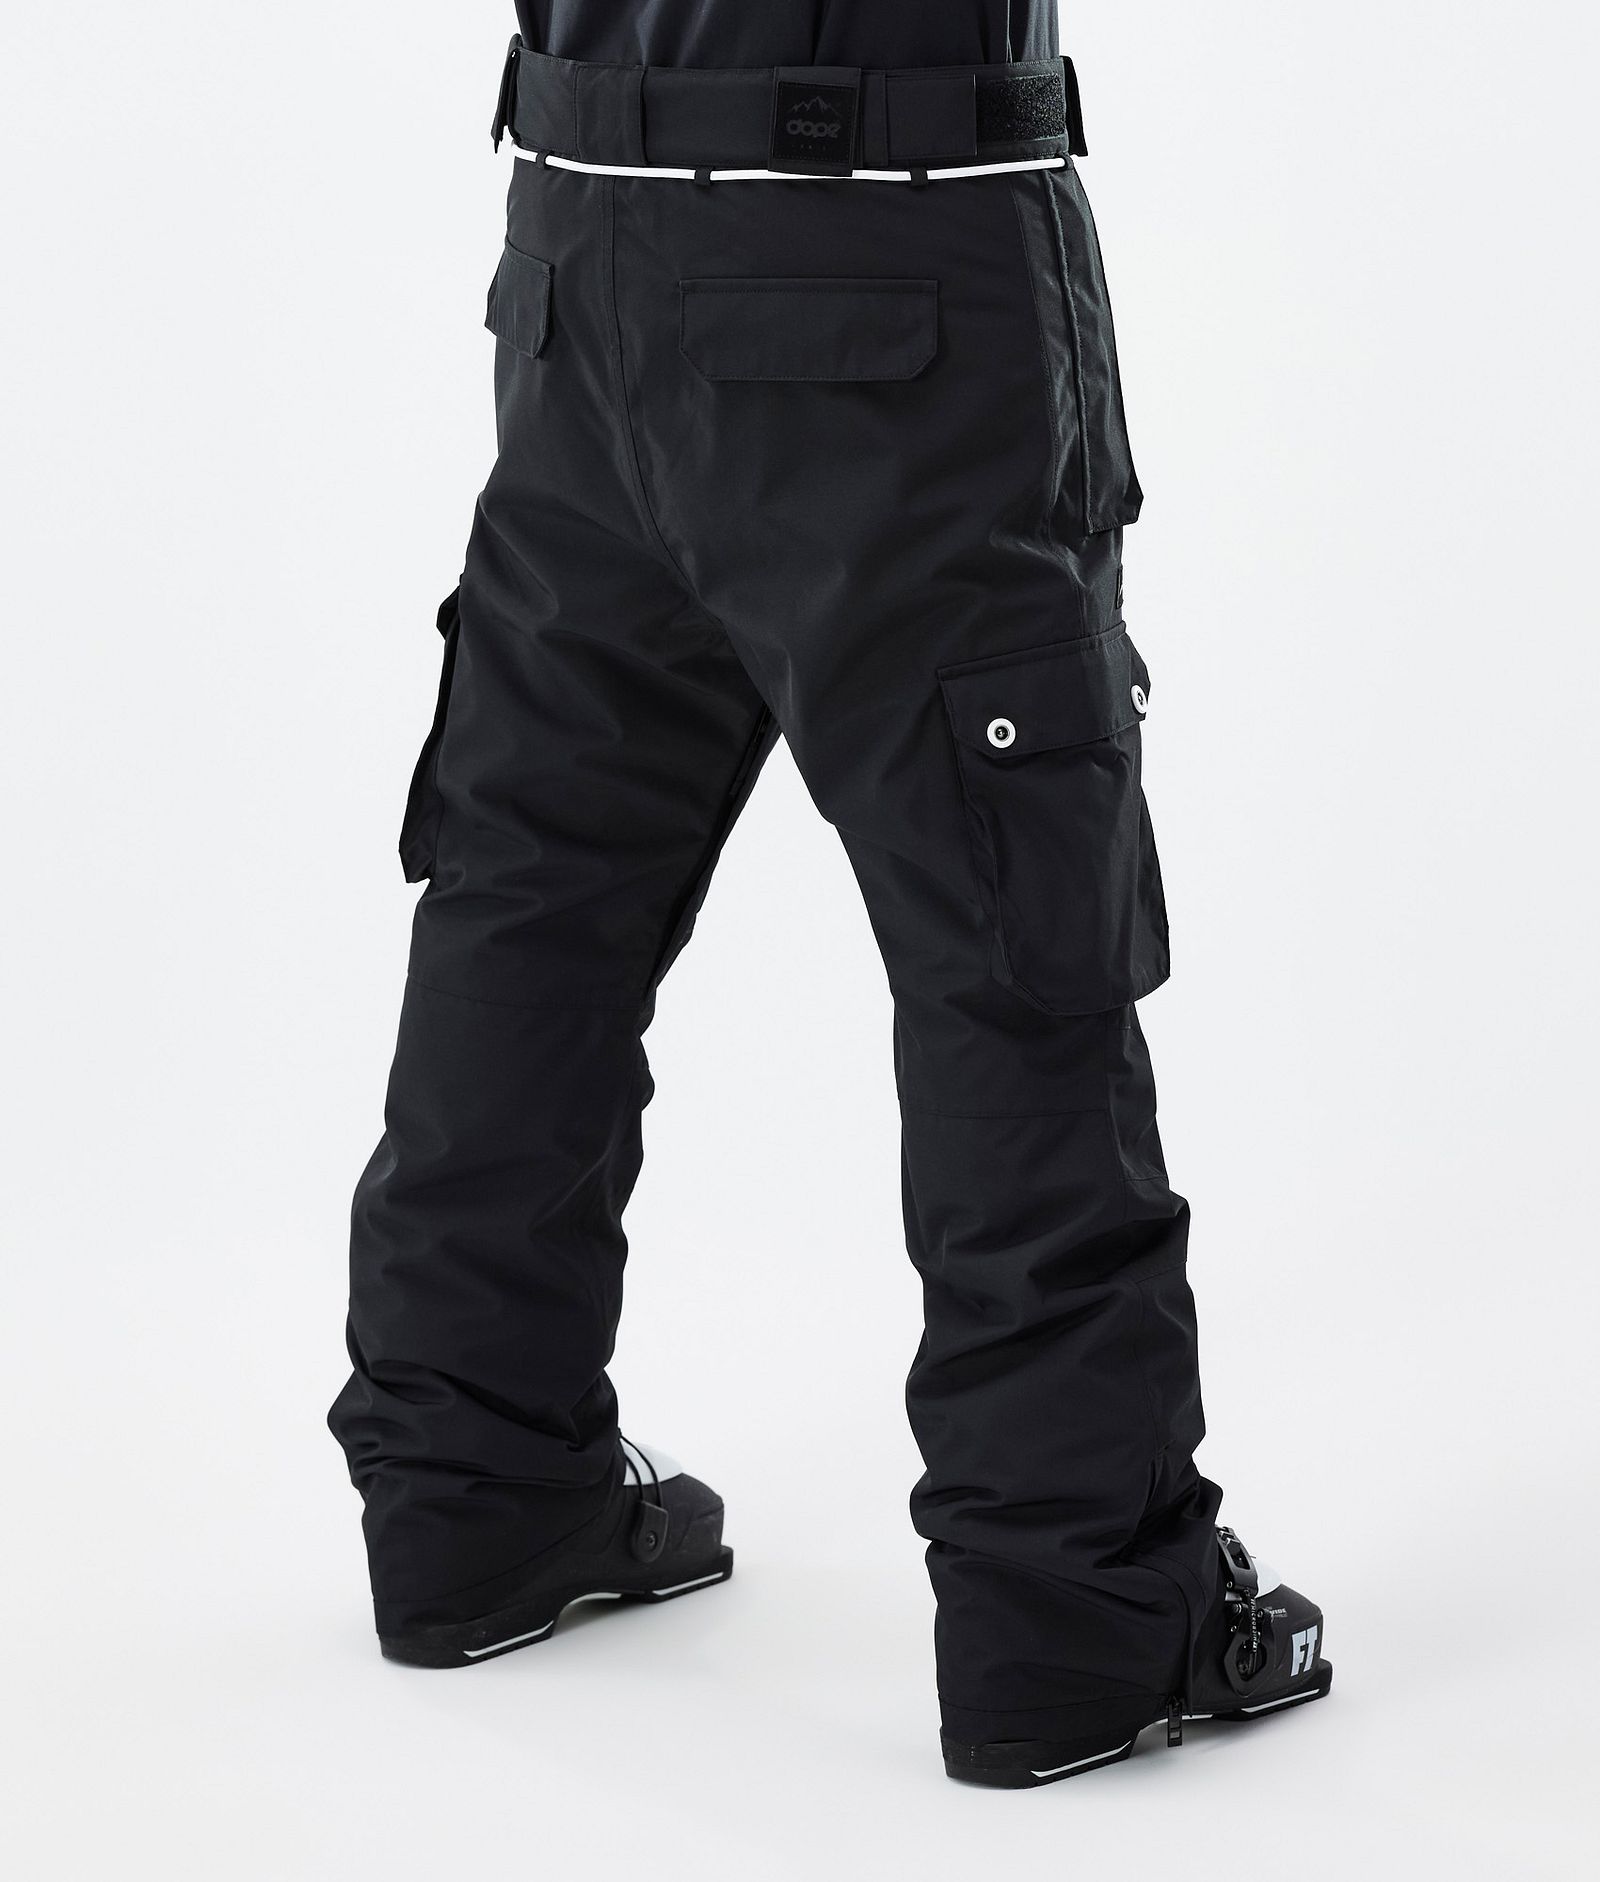 Iconic Pantaloni Sci Uomo Black, Immagine 4 di 7